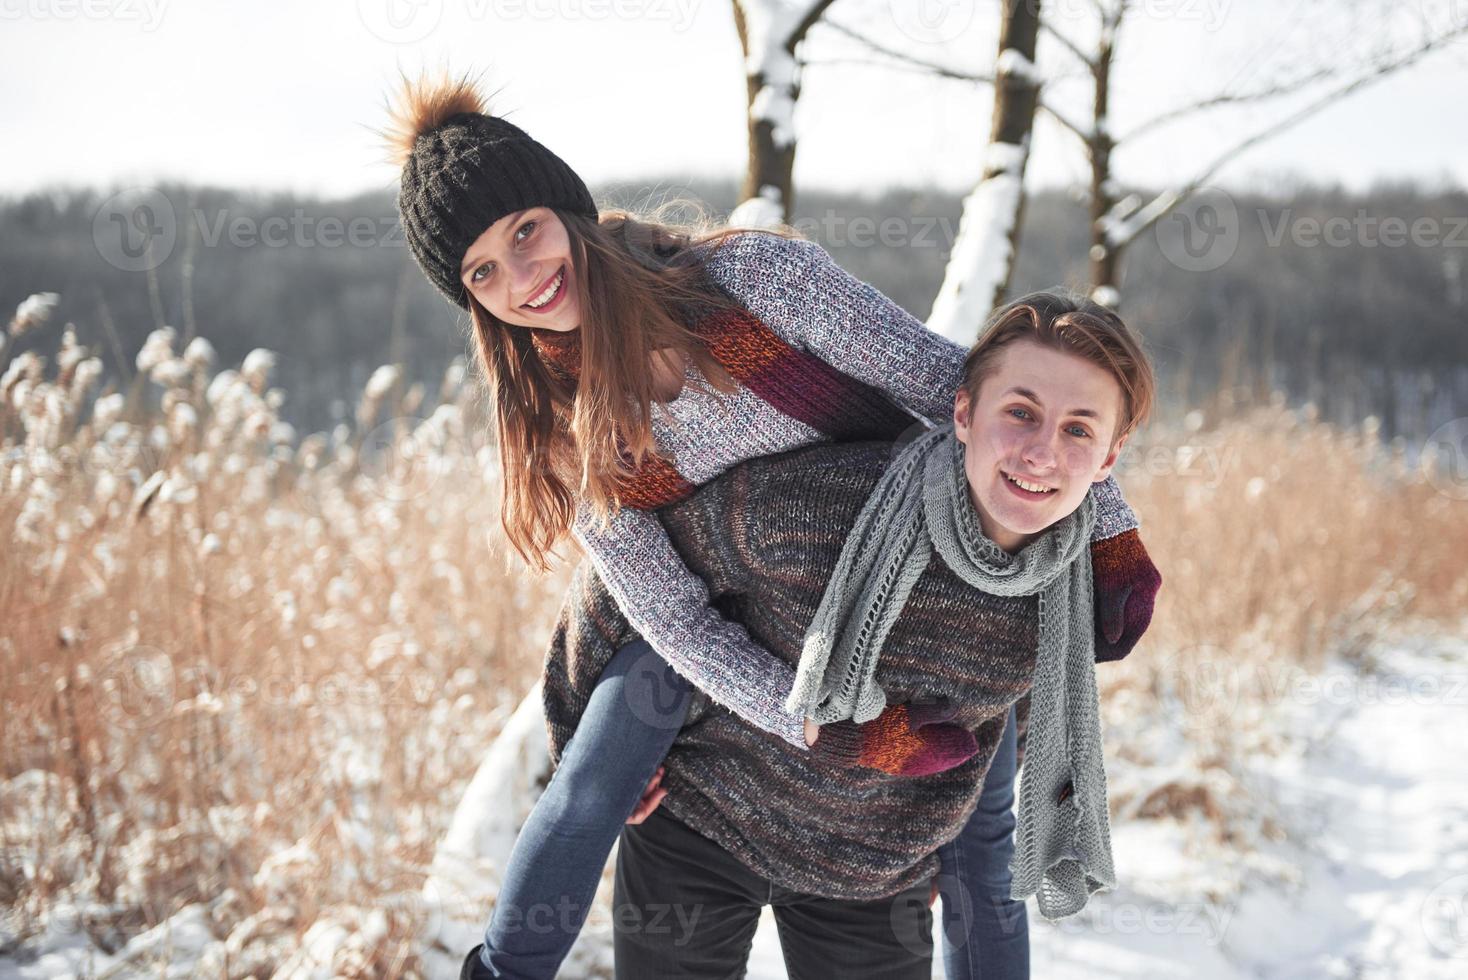 jovem casal feliz se diverte na neve fresca em um lindo dia ensolarado de inverno nas férias foto